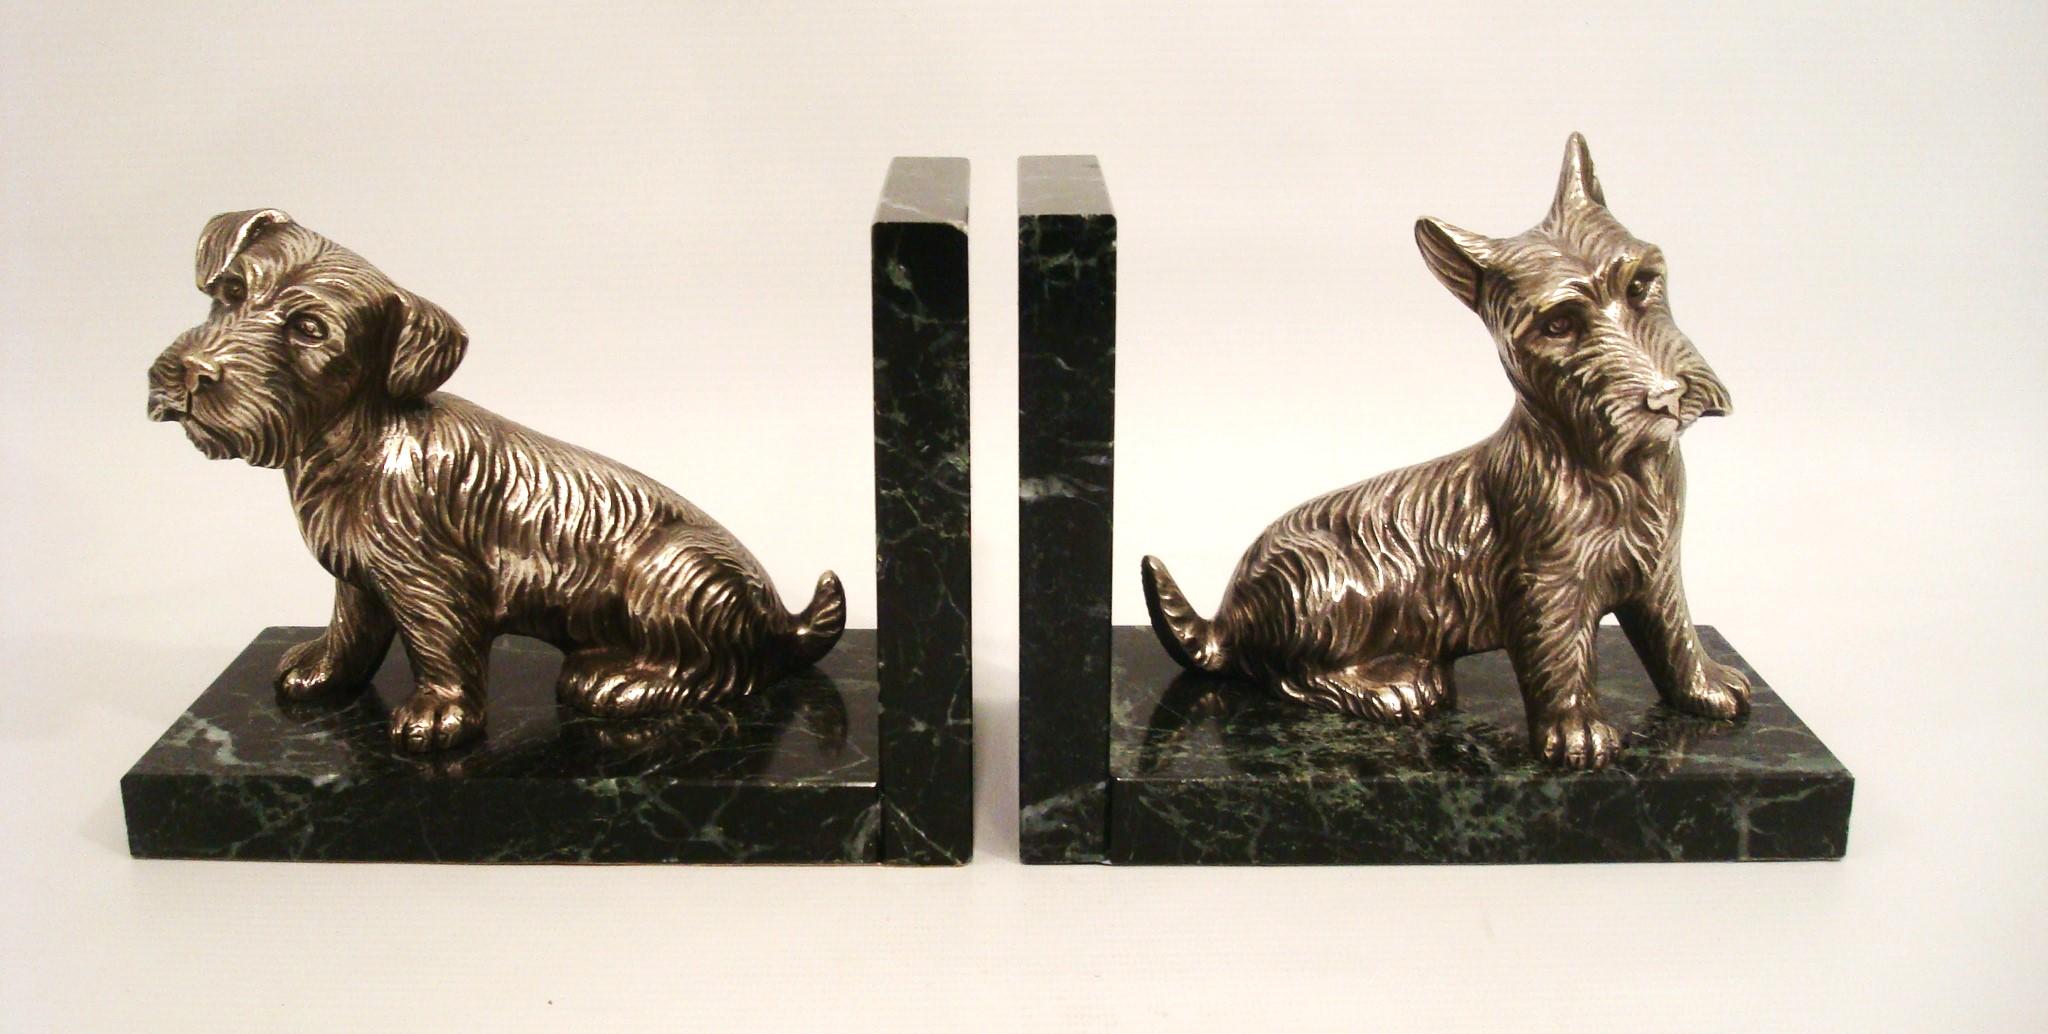 Dies ist ein Satz von Art Deco Buchstützen mit Scottish Terriers. Der Scottie ist sehr detailliert und die versilberte Bronzepatina ist großartig. Der Sockel besteht aus einem dunkelgrünen Marmor, der die Hunde besonders gut zur Geltung